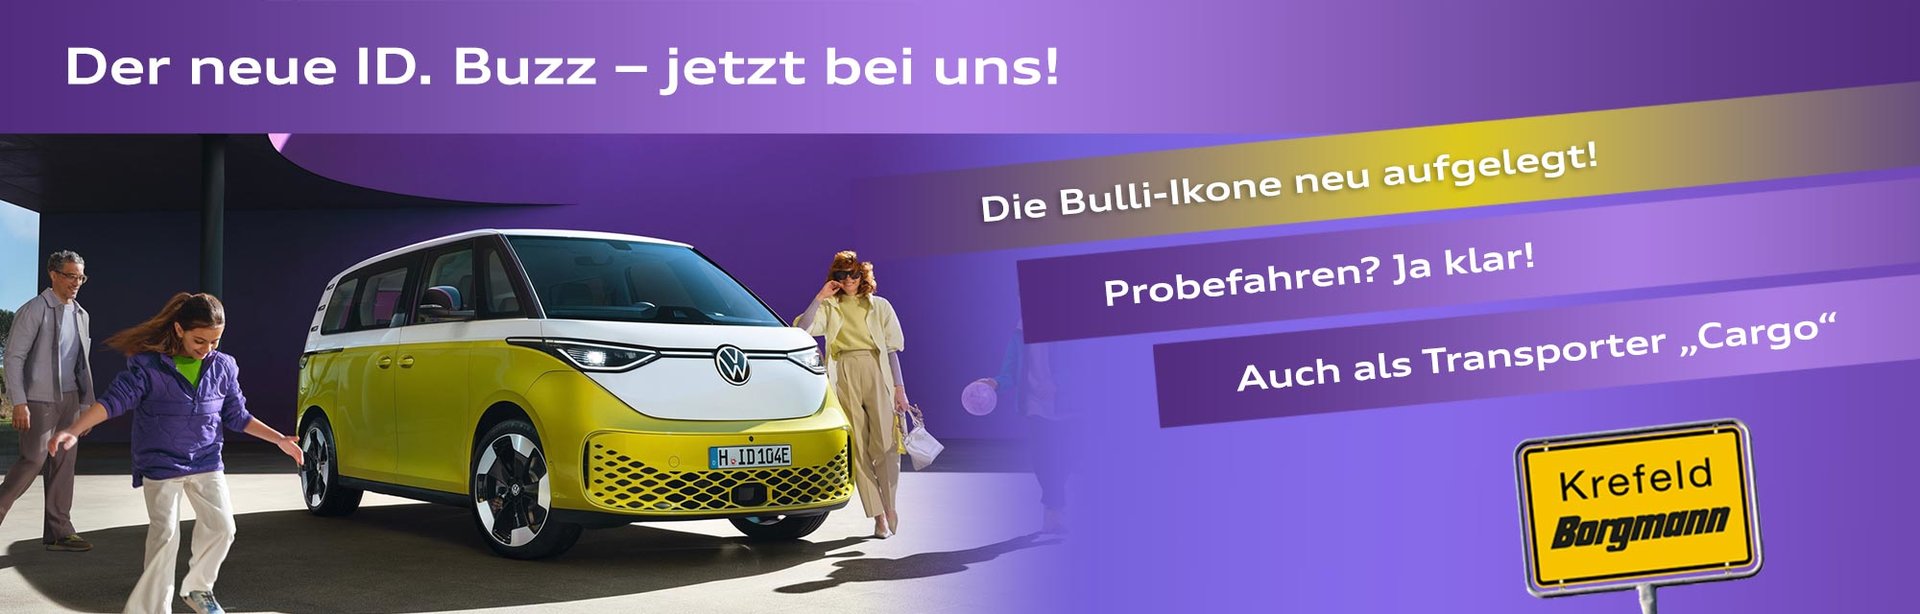 Der neue ID. Buzz im Autohaus Borgmann Krefeld